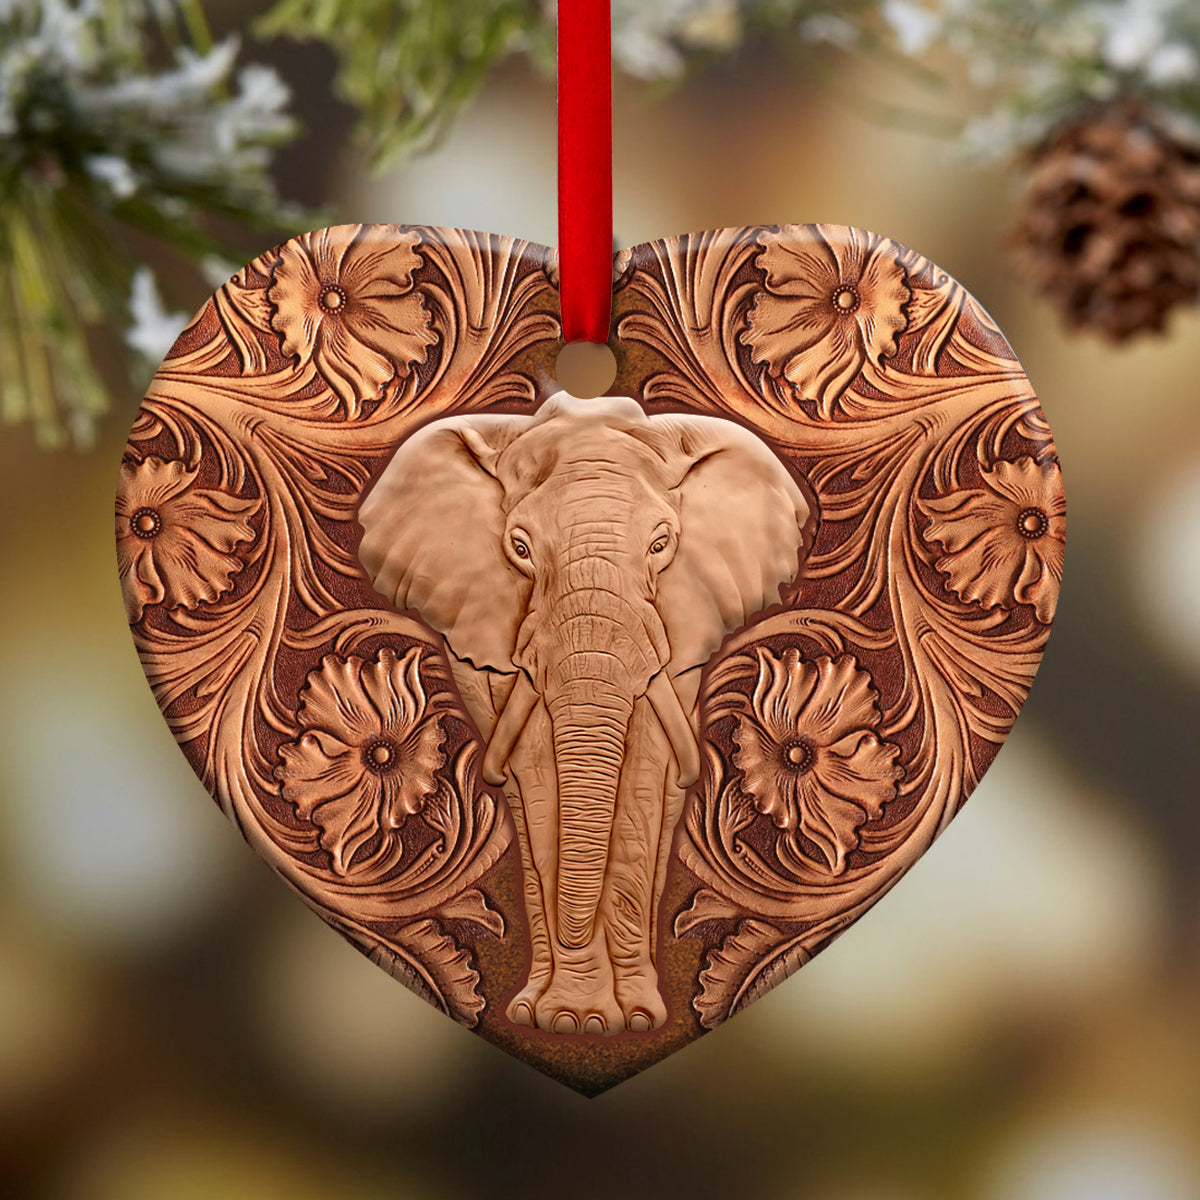 Elephant Wood Sculpture Style - Heart Ornament - Owls Matrix LTD